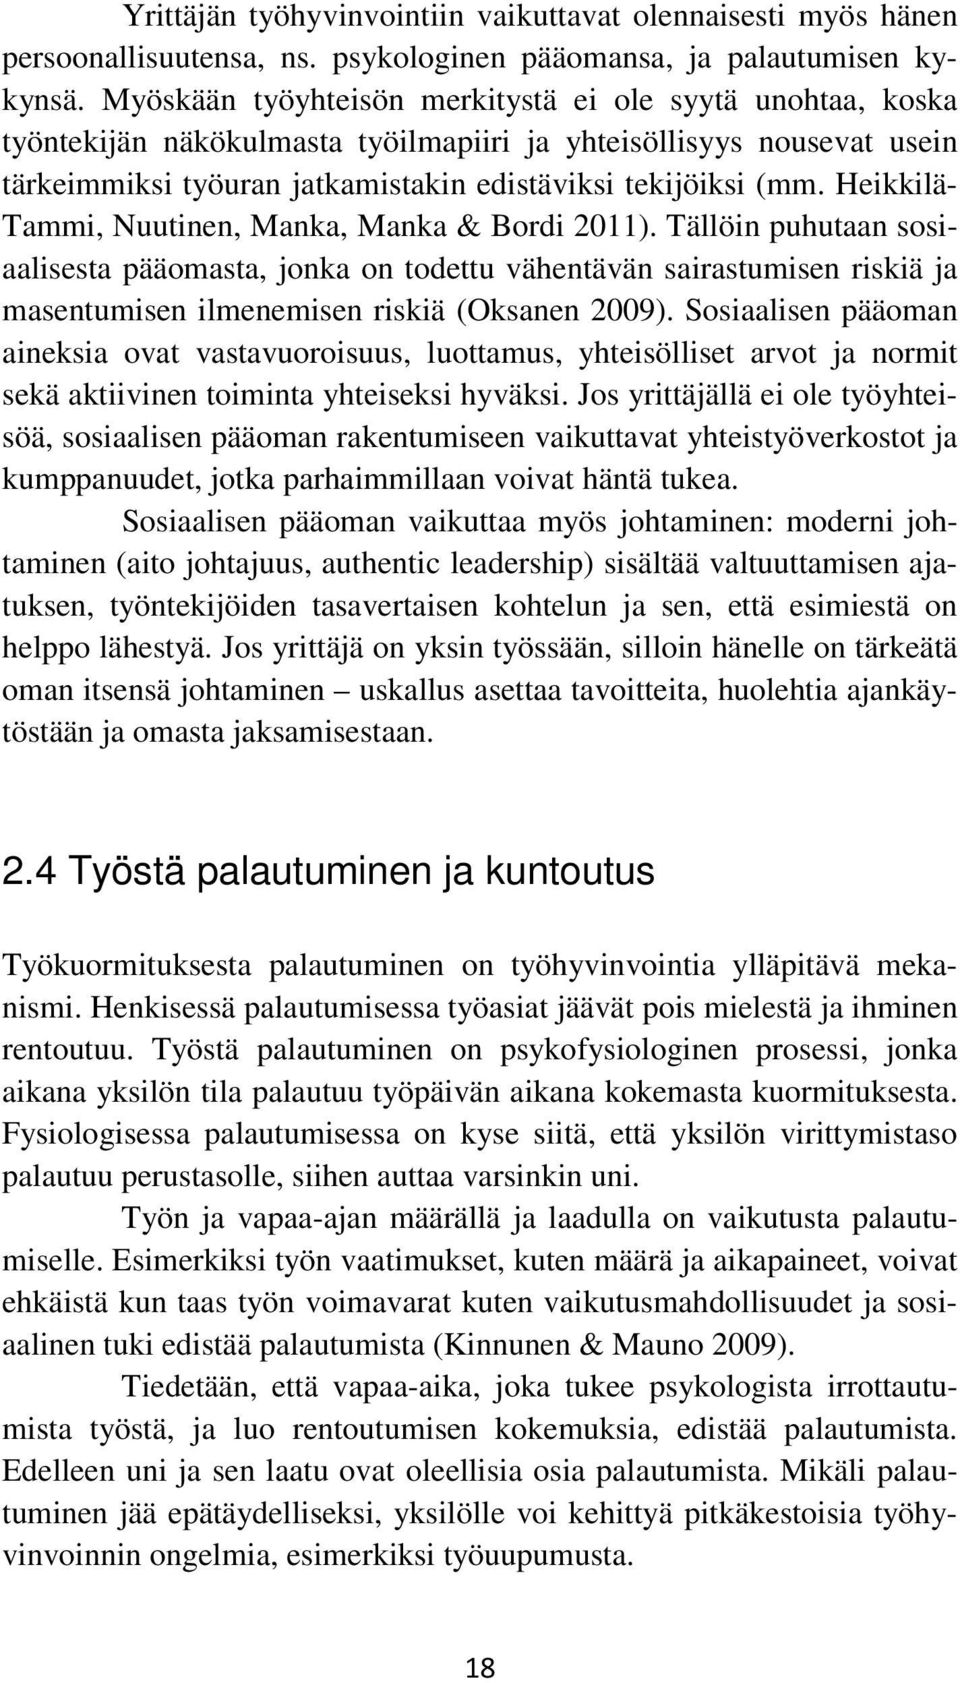 Heikkilä- Tammi, Nuutinen, Manka, Manka & Bordi 2011). Tällöin puhutaan sosiaalisesta pääomasta, jonka on todettu vähentävän sairastumisen riskiä ja masentumisen ilmenemisen riskiä (Oksanen 2009).